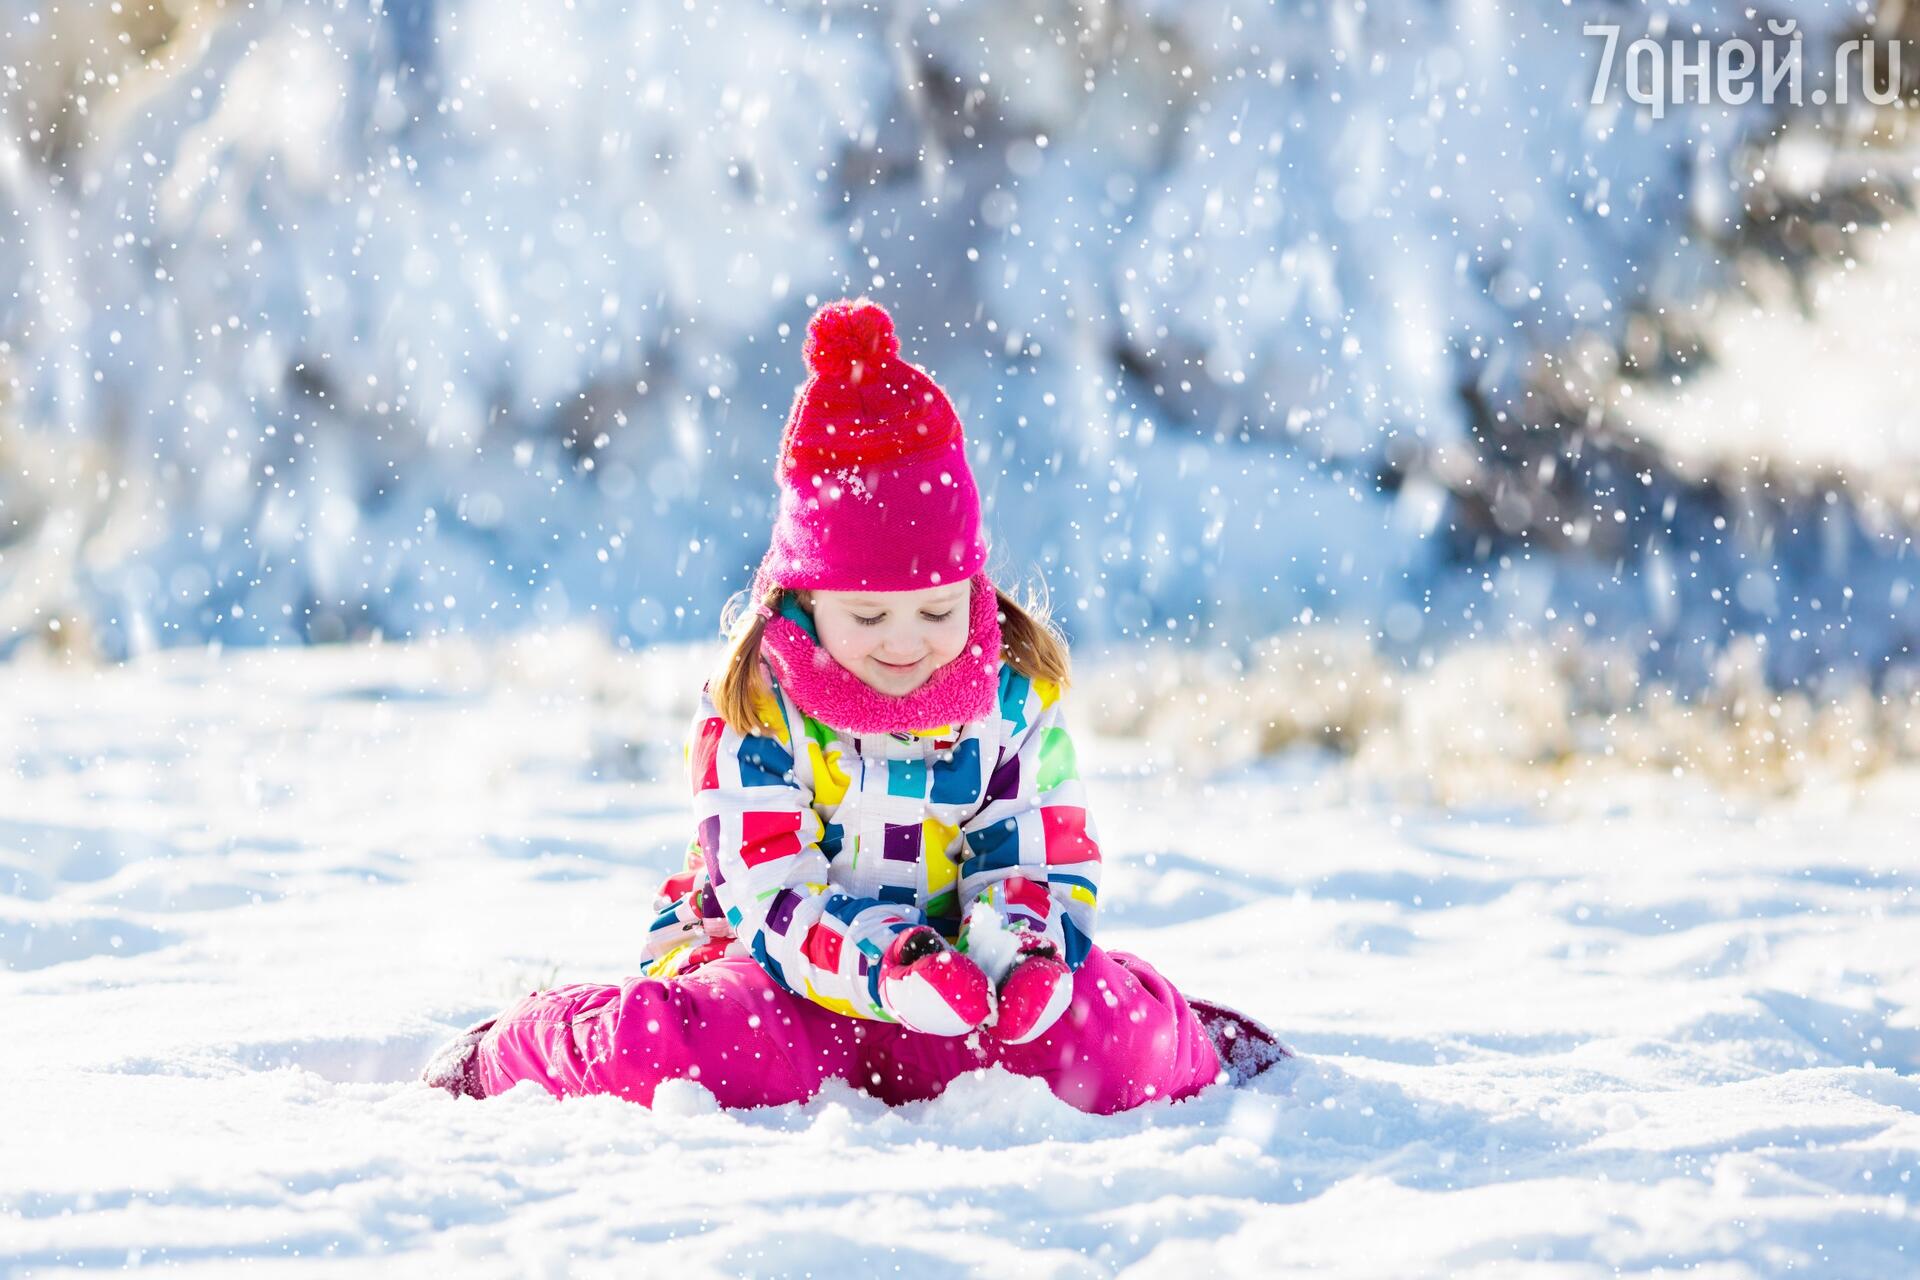 Занимательные, интересные и любопытные факты про снежинки для детей